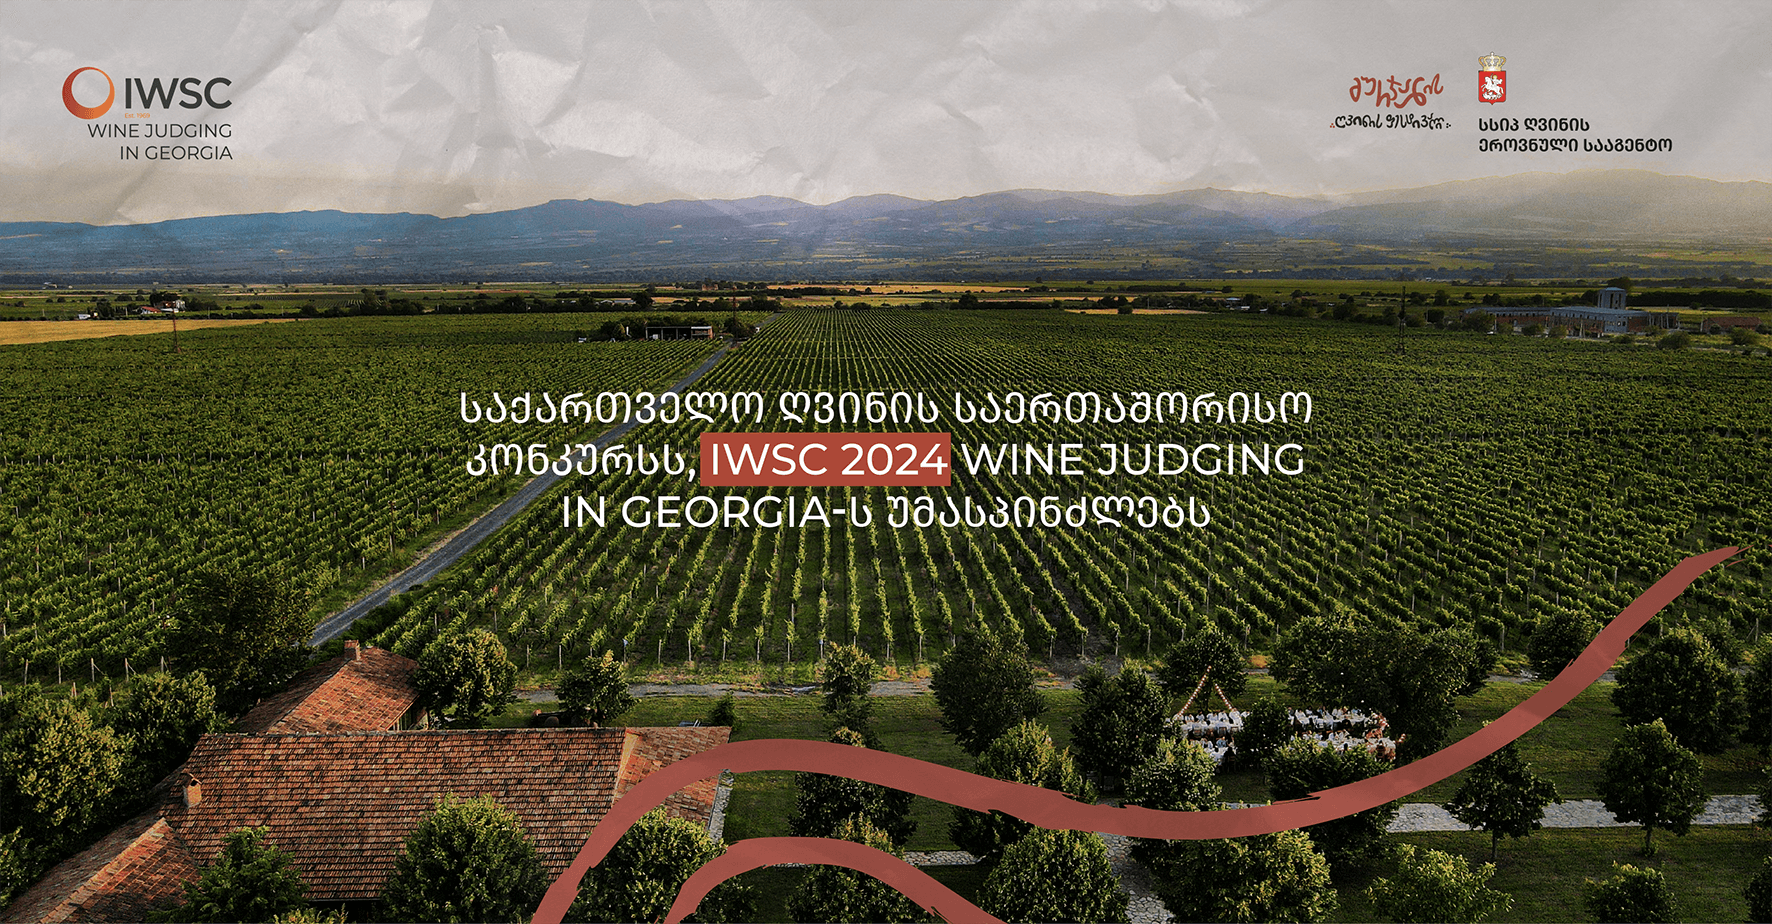 საქართველო ღვინის საერთაშორისო კონკურსს, IWSC 2024 WINE JUDGING IN GEORGIA-ს უმასპინძლებს